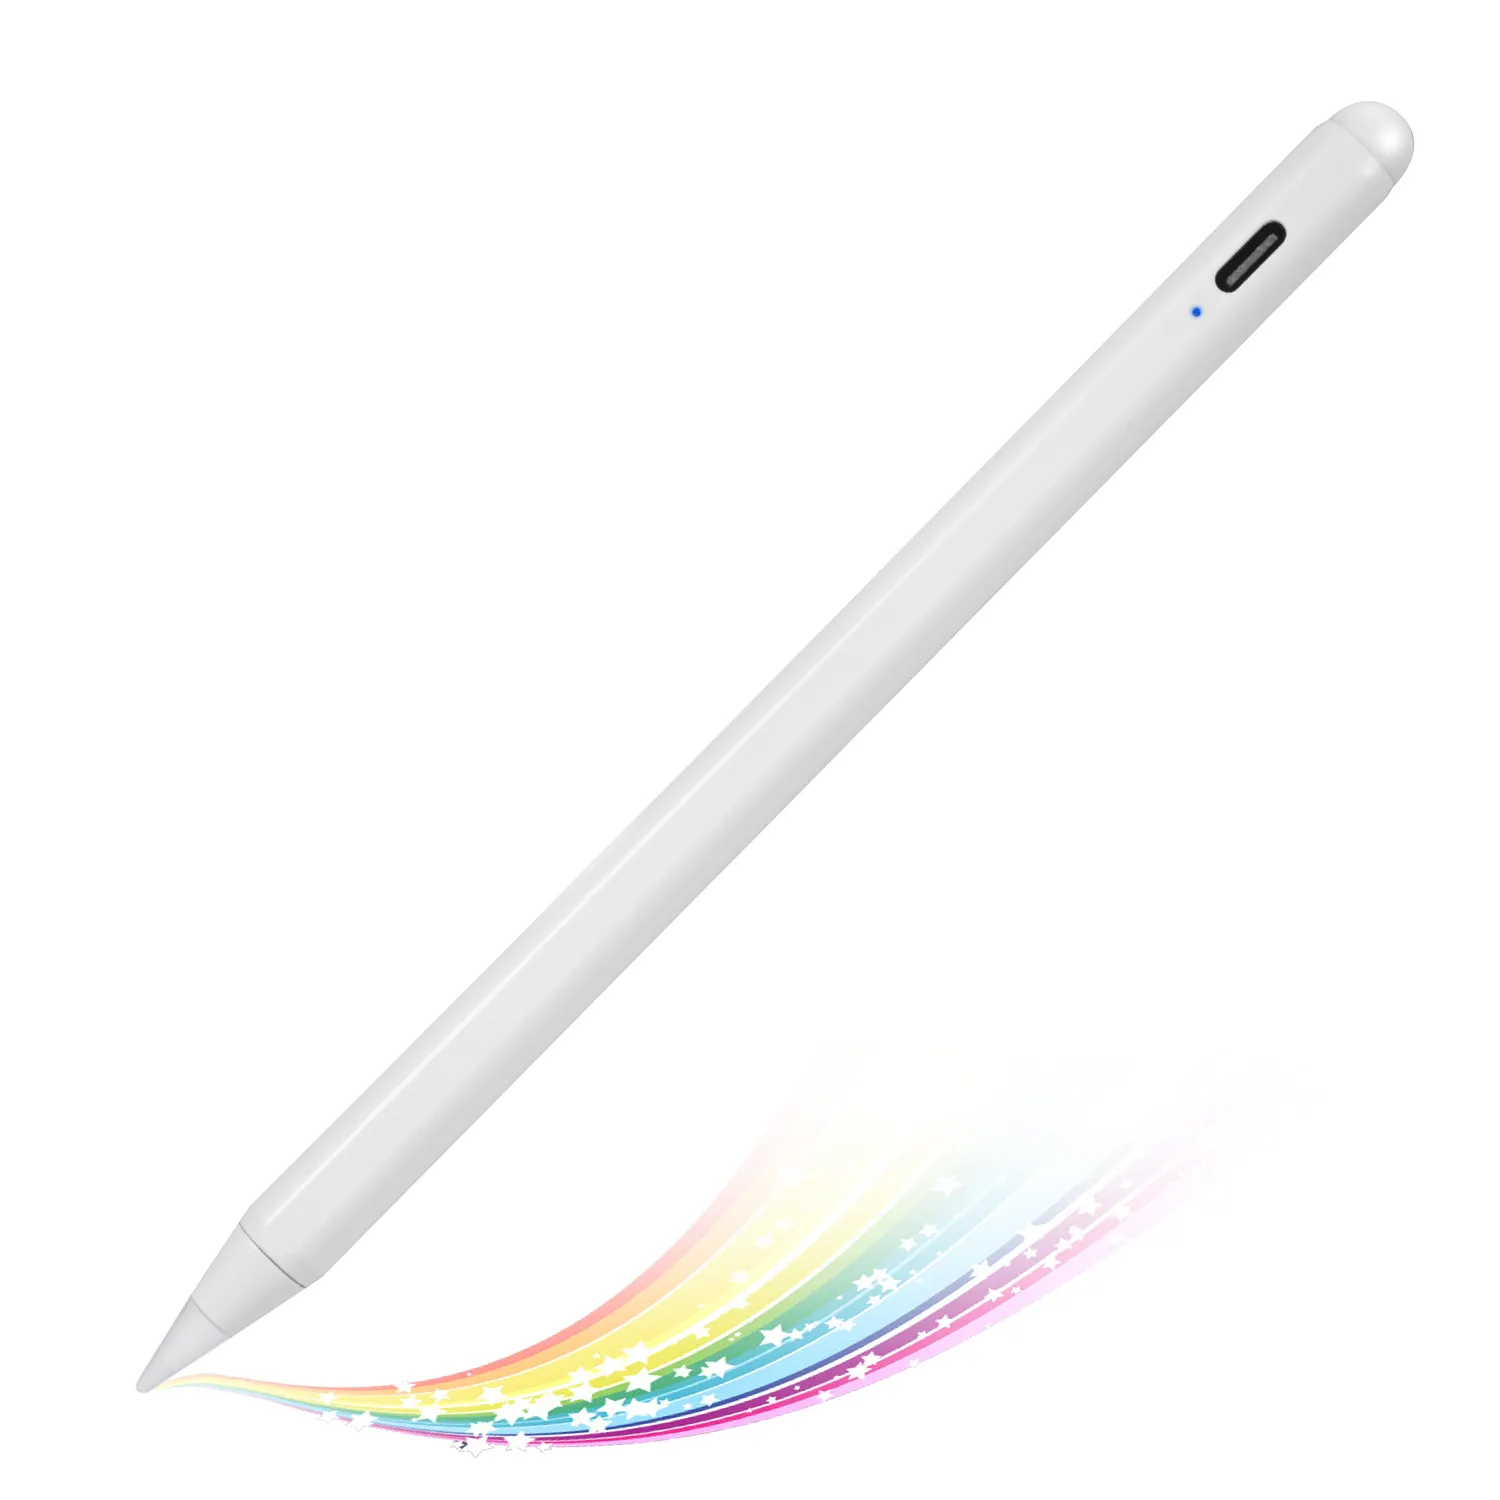 Ipad 에어 프로 미니 스마트 펜 2 파인 펜 팁 액세서리 팜 거부 스타일러스 태블릿 애플 연필